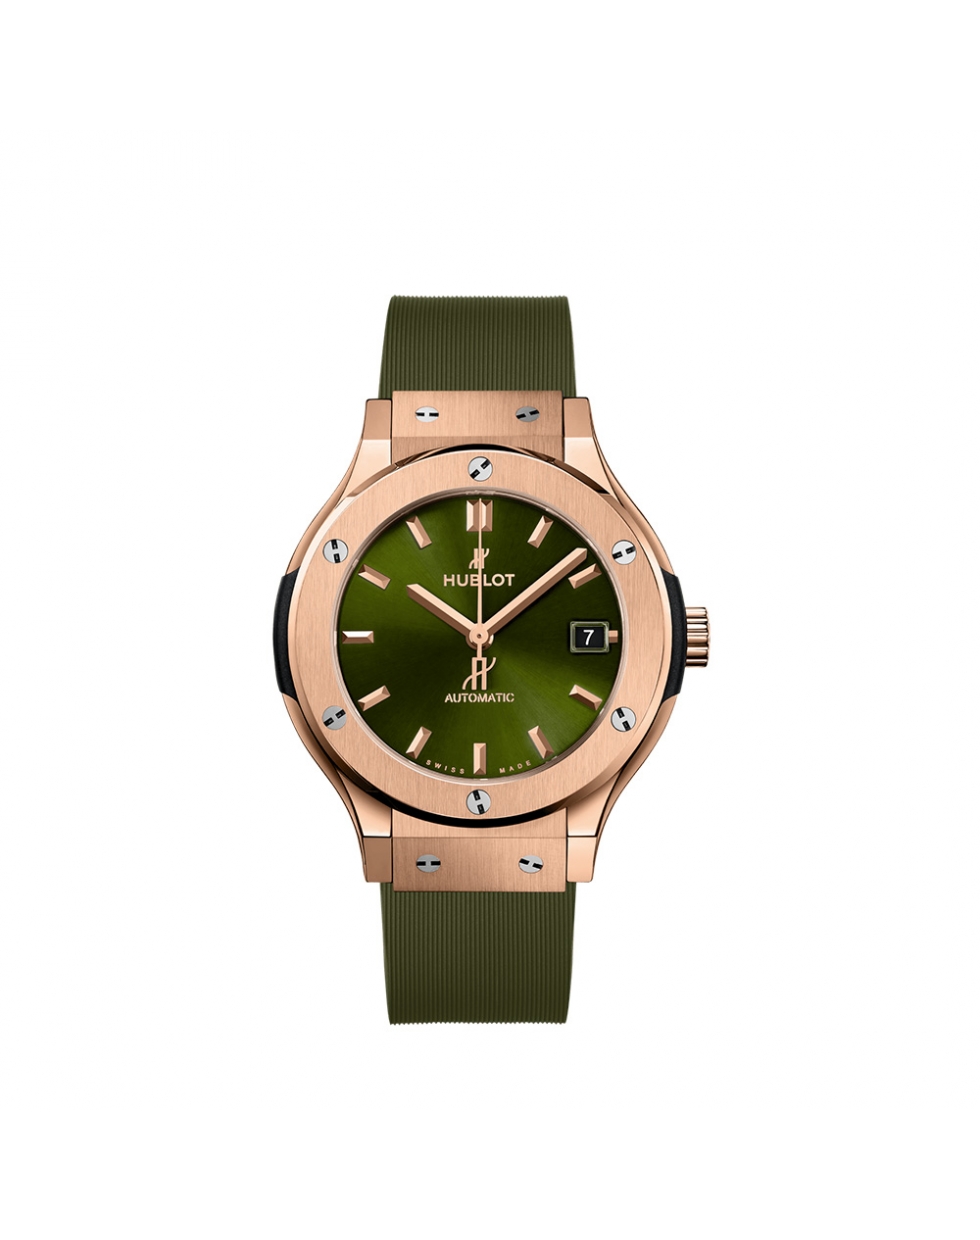 Montre Hublot Classic Fusion automatique cadran vert bracelet en caoutchouc vert ligné 38 mm